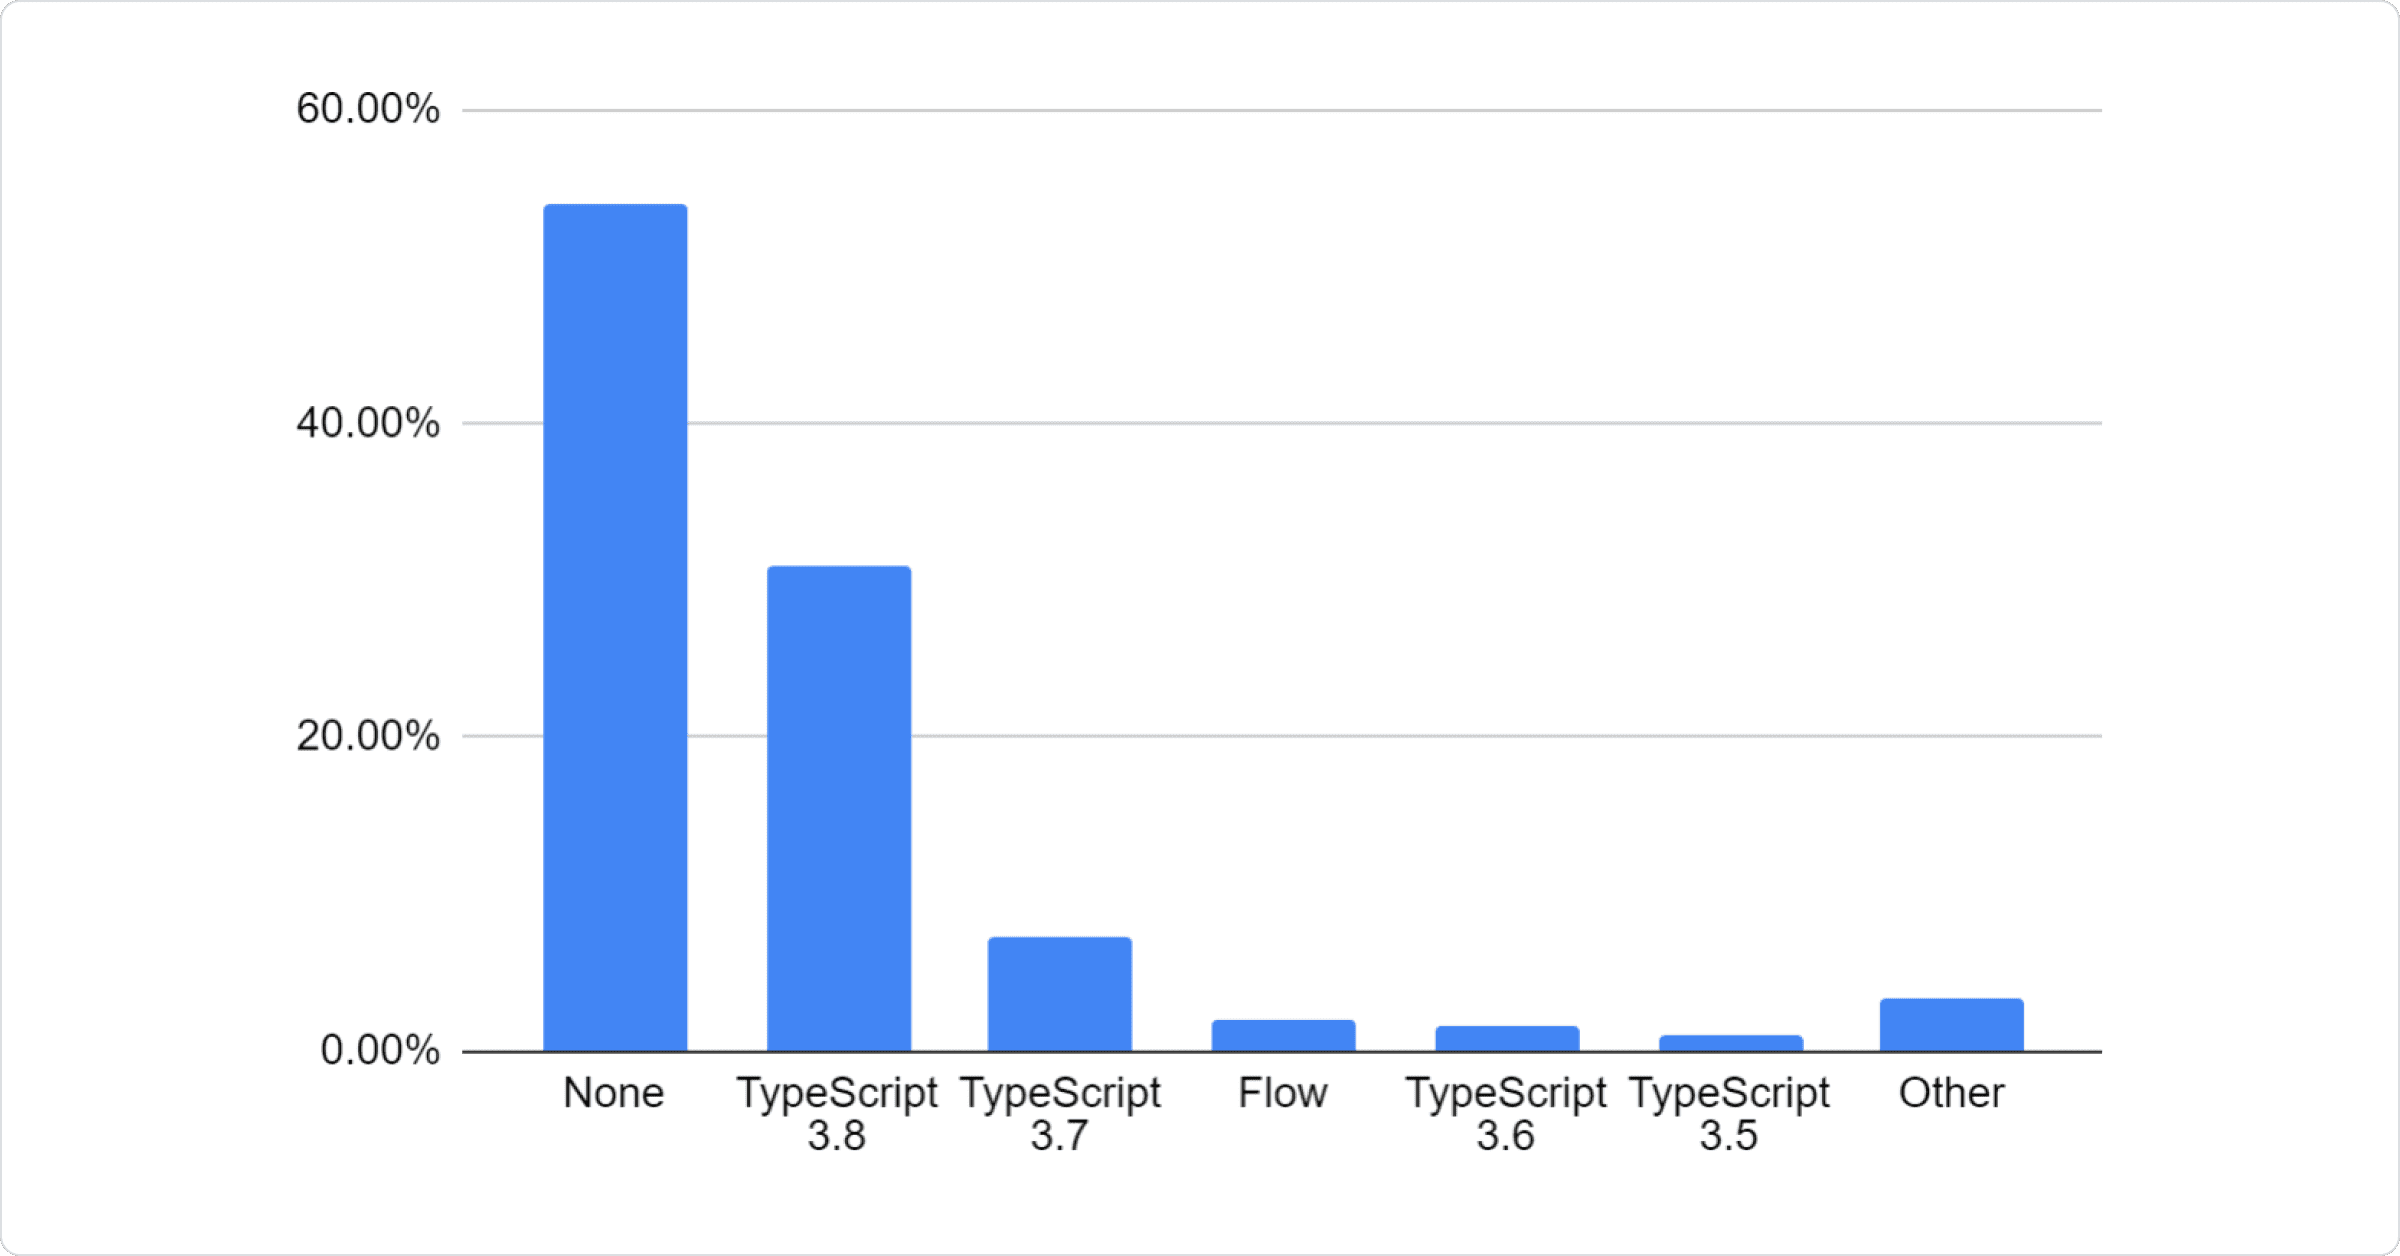 Bar chart: 54.08% None
30.87% TypeScript 3.8, 7.31% TypeScript 3.7, 1.90% Flow, 1.55% TypeScript 3.6, 0.98% TypeScript 3.5, 3.31% Other